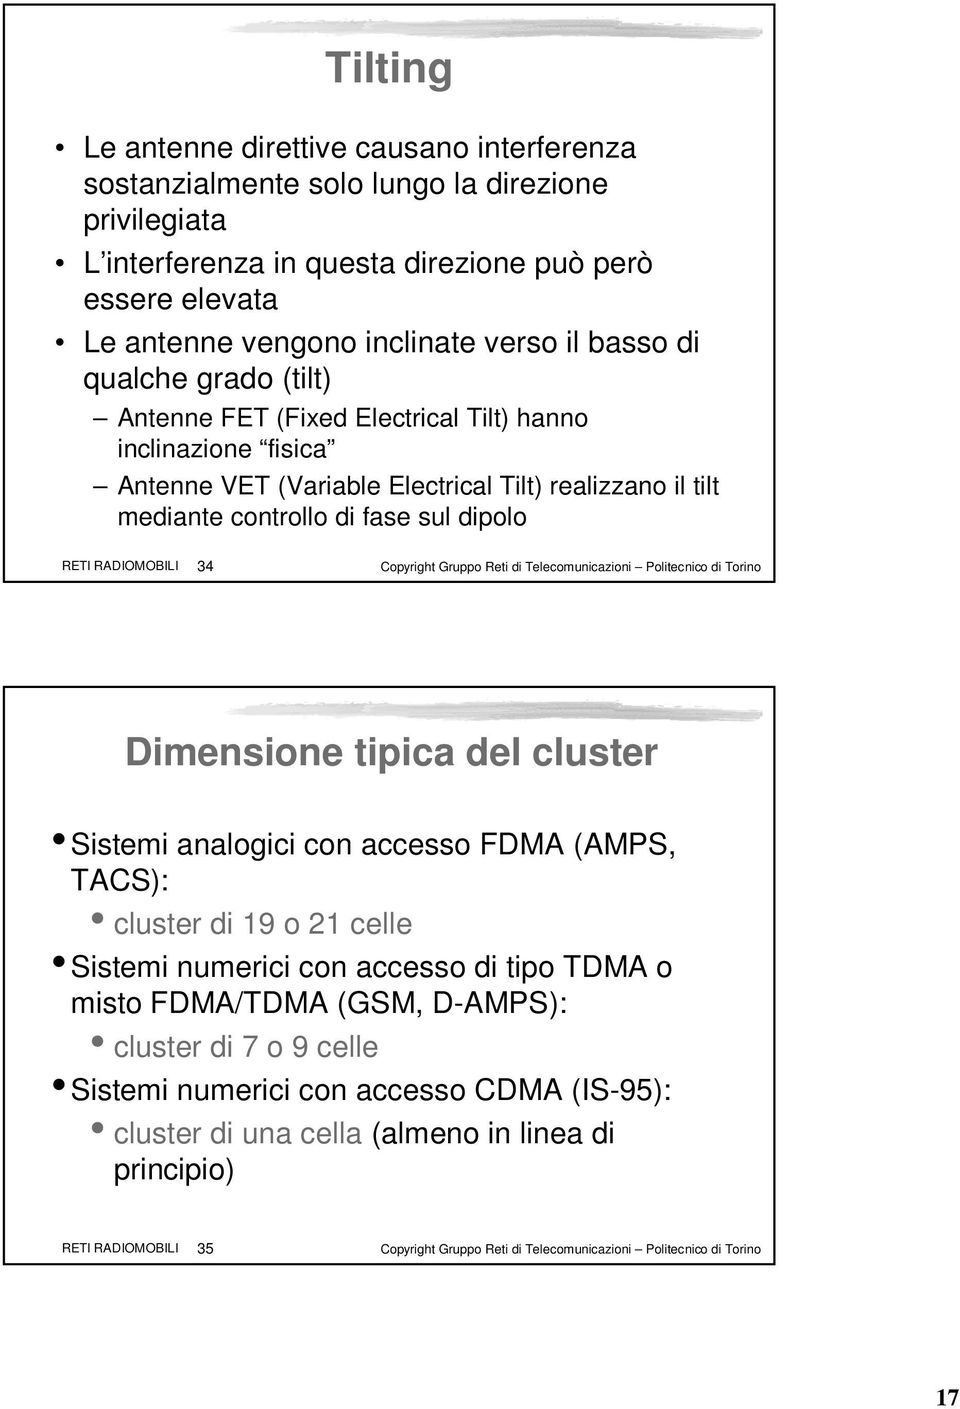 RADIOMOBILI 34 Copyright Gruppo Reti di Telecomunicazioni Politecnico di Torino Dimensione tipica del cluster Sistemi analogici con accesso FDMA (AMPS, TACS): cluster di 19 o 21 celle Sistemi